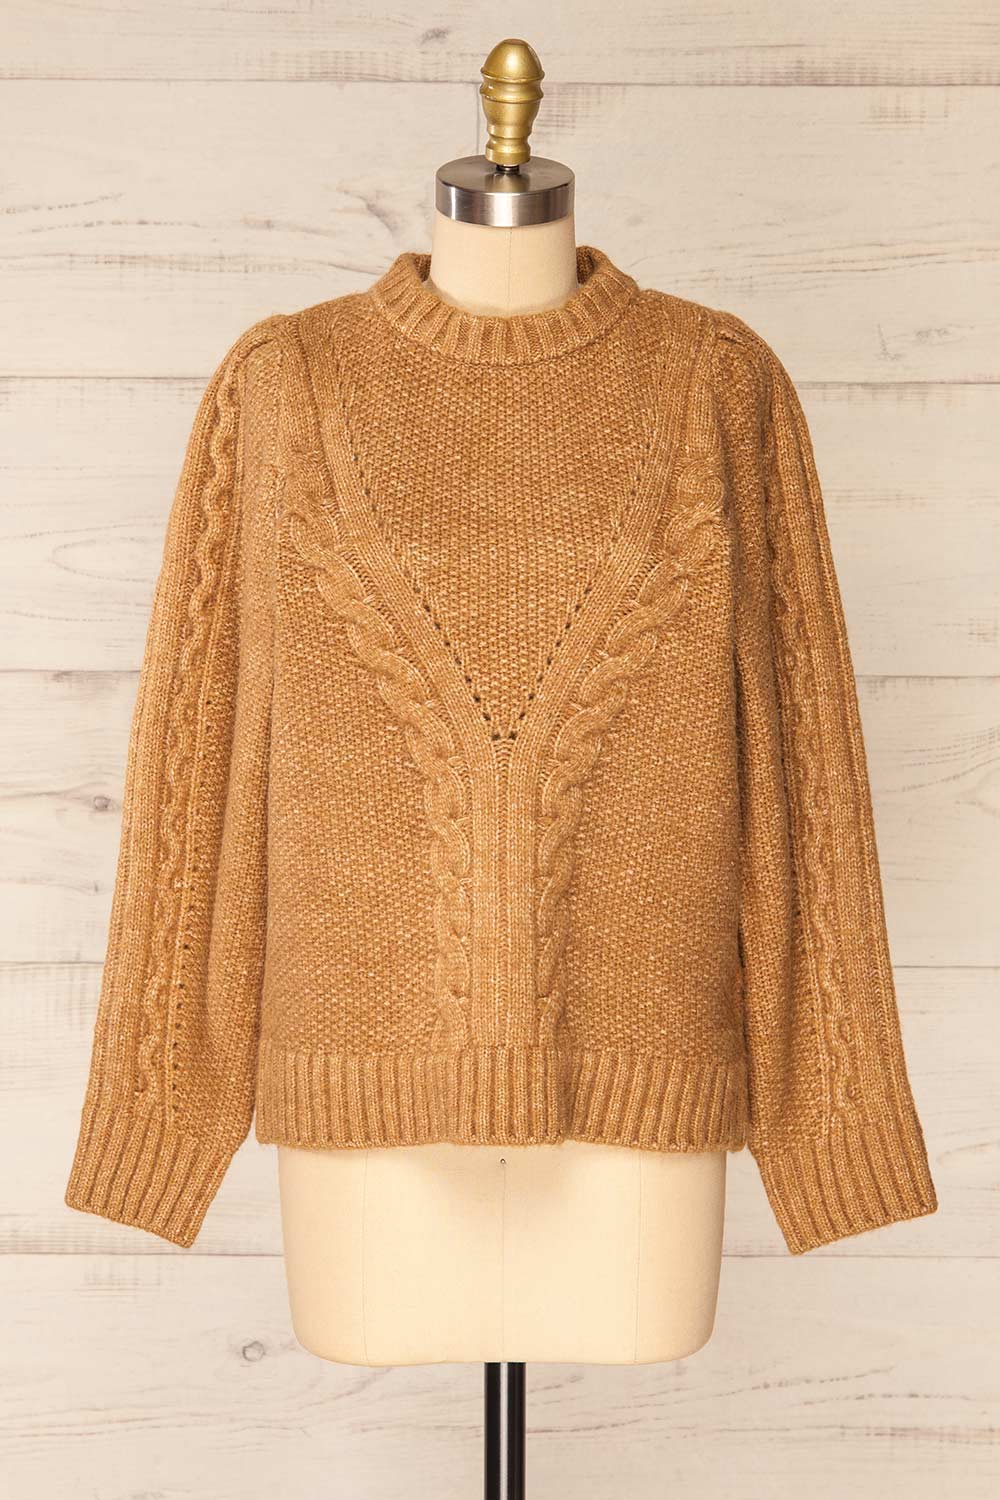 Granollers Caramel Cable Knit Sweater | La petite garçonne front view